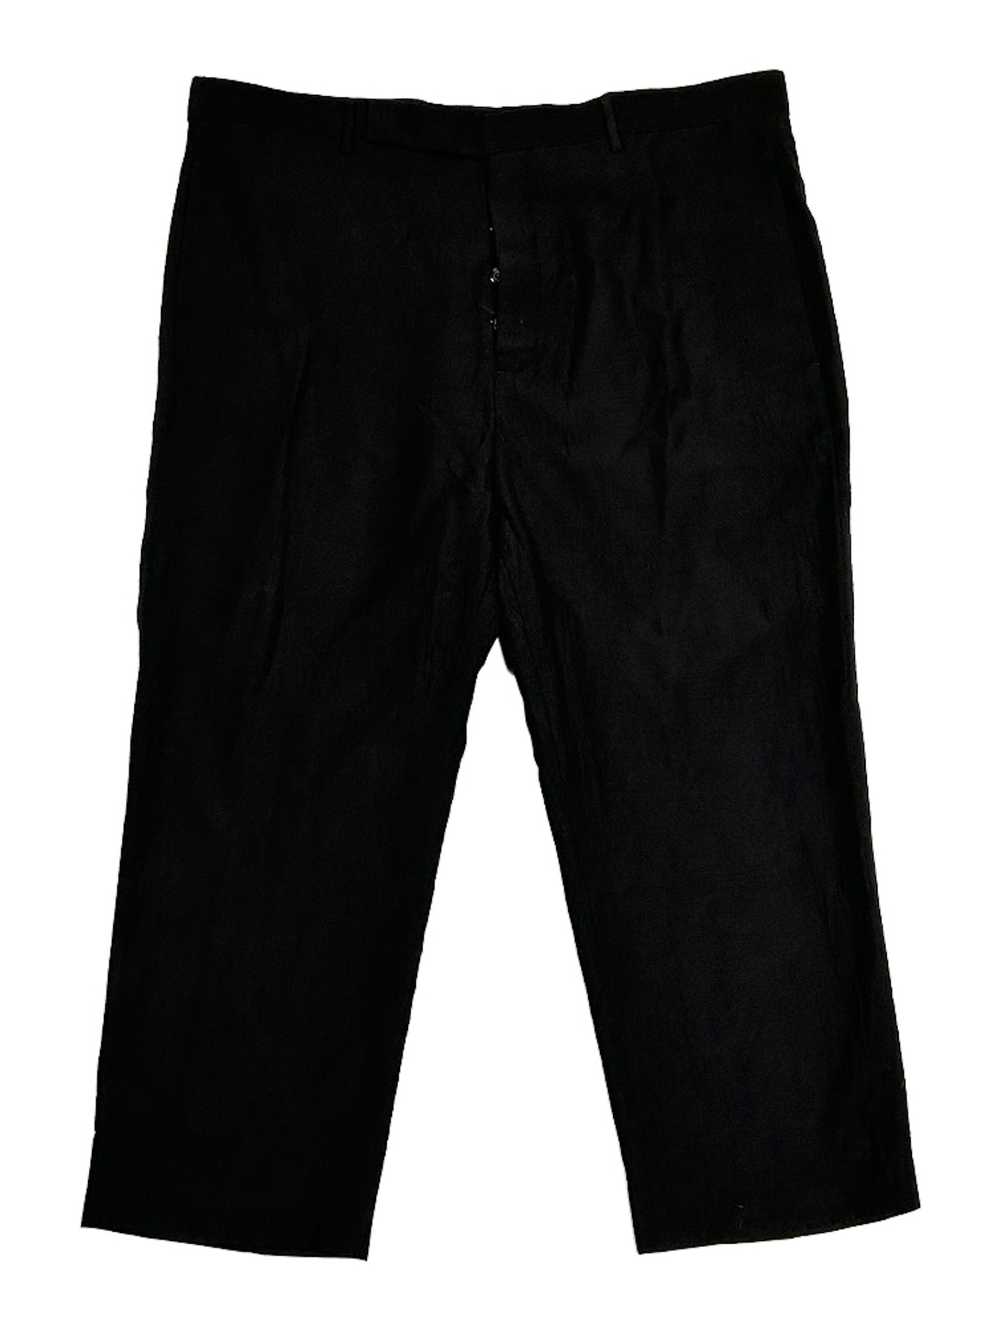 Rick Owens SS20 TECUATL Wool Cropped Pants - image 1